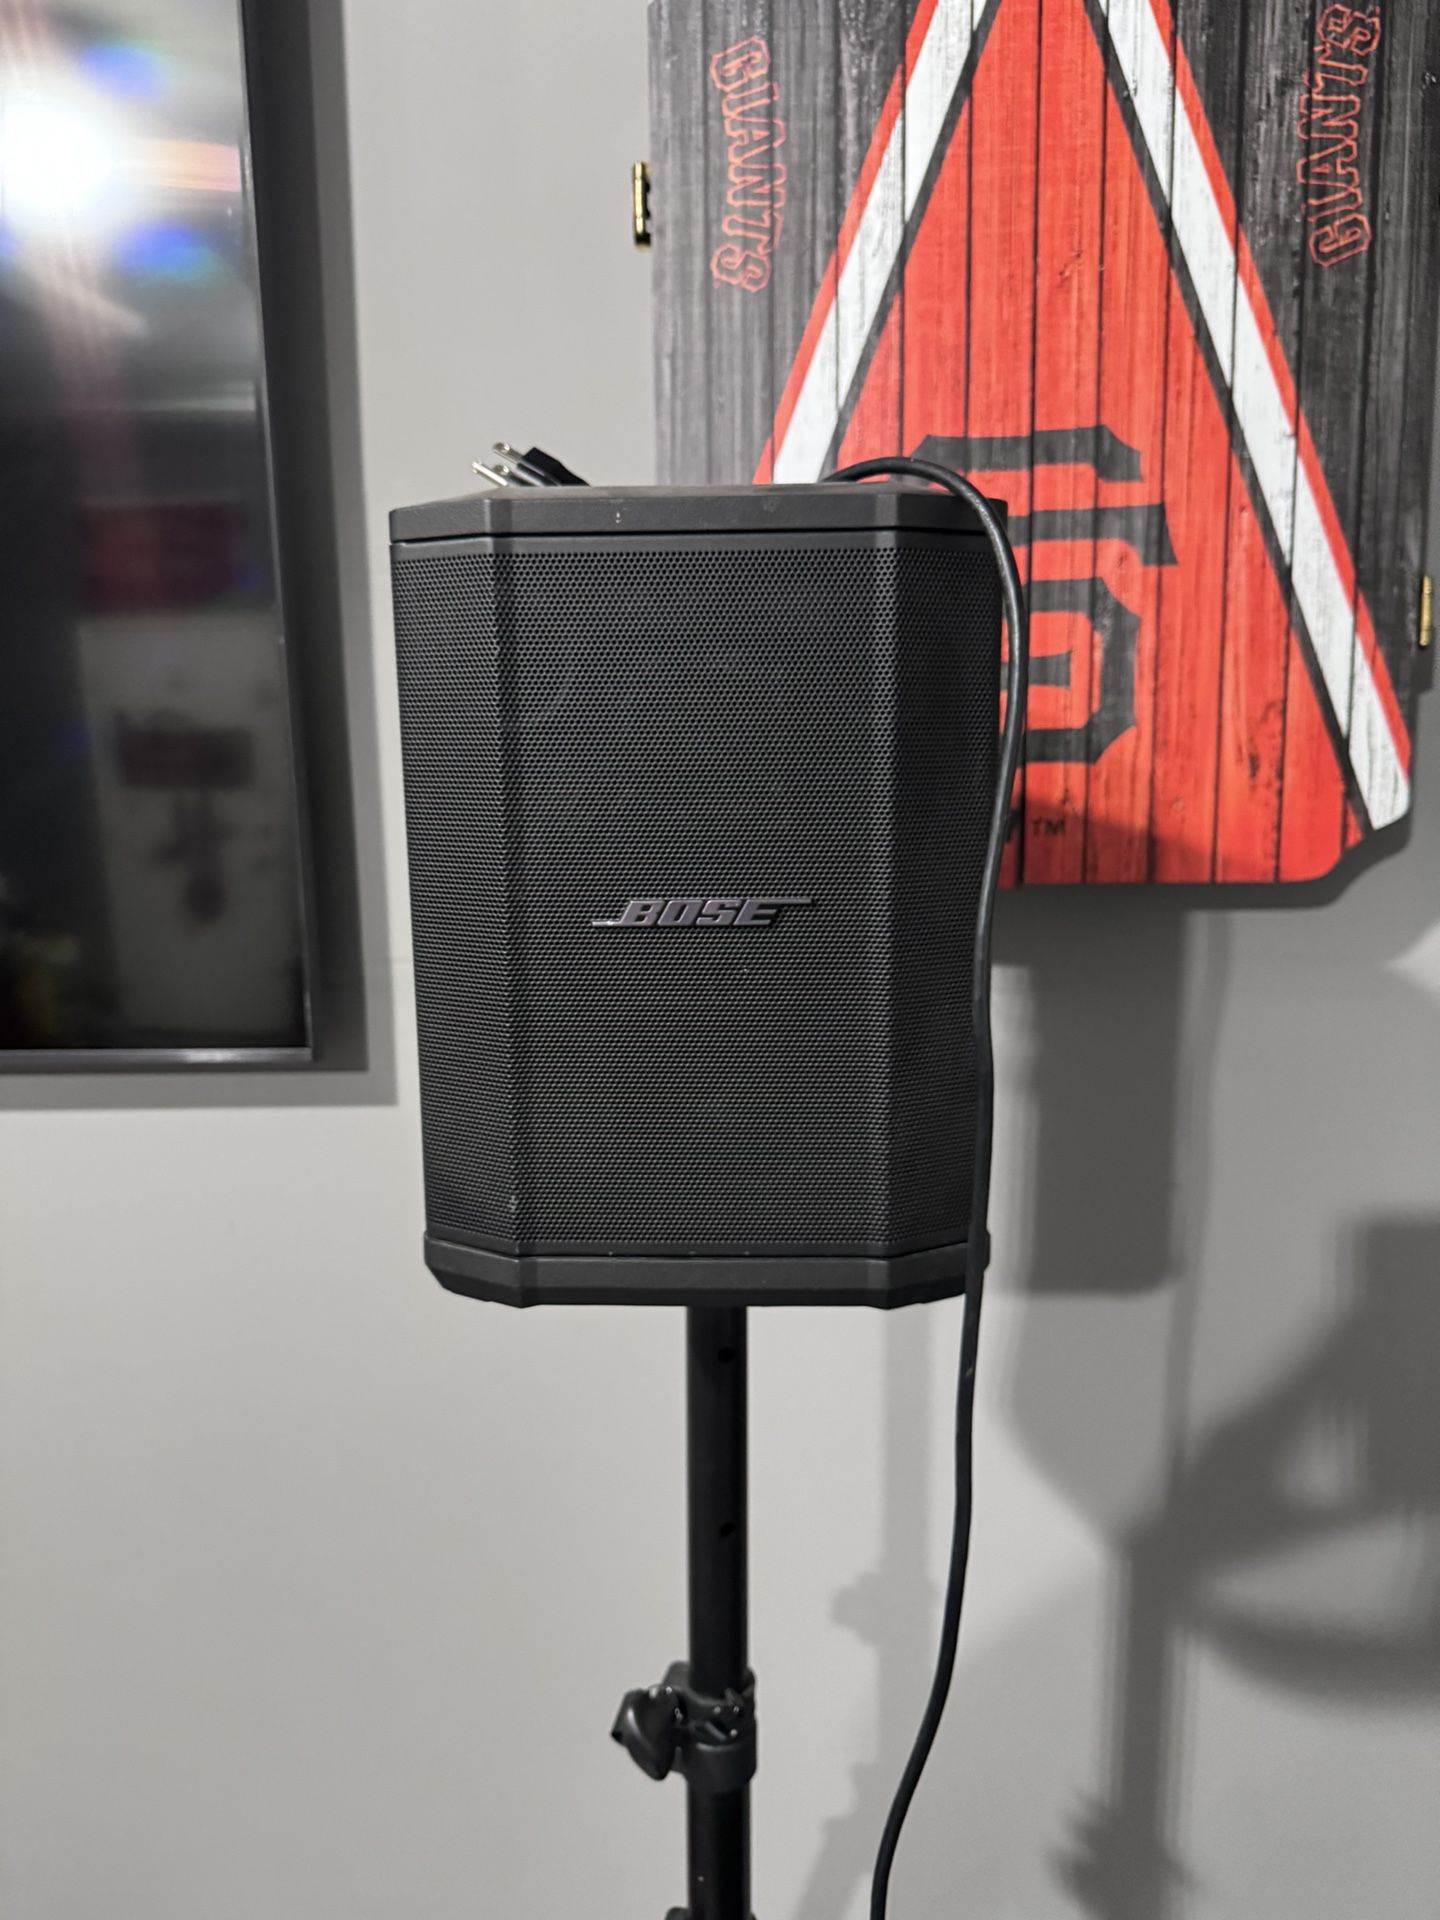 Bose PA speaker